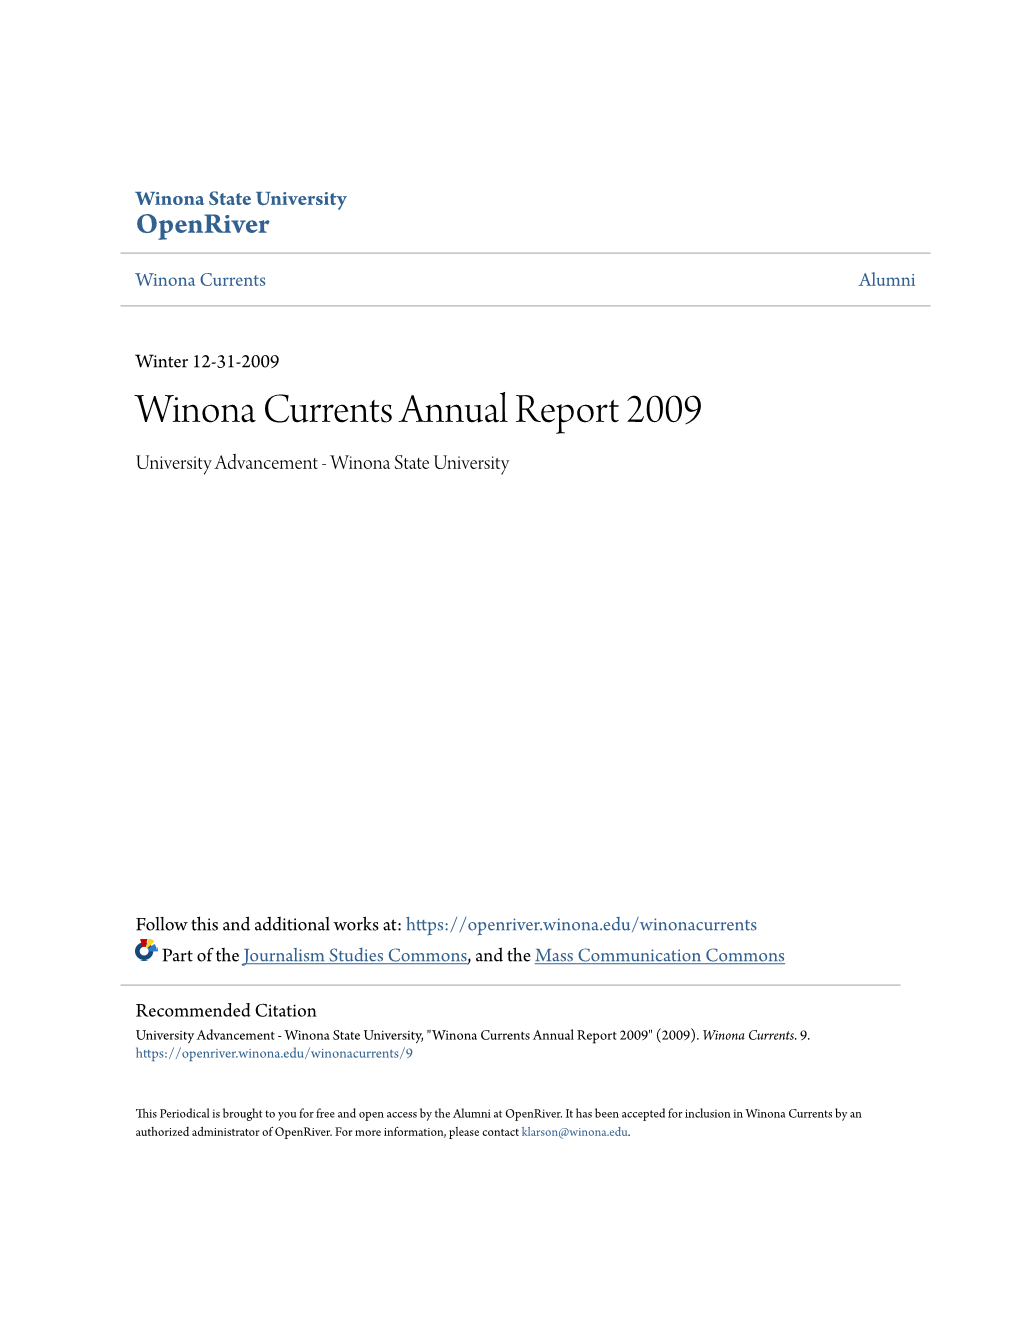 Winona Currents Annual Report 2009 University Advancement - Winona State University